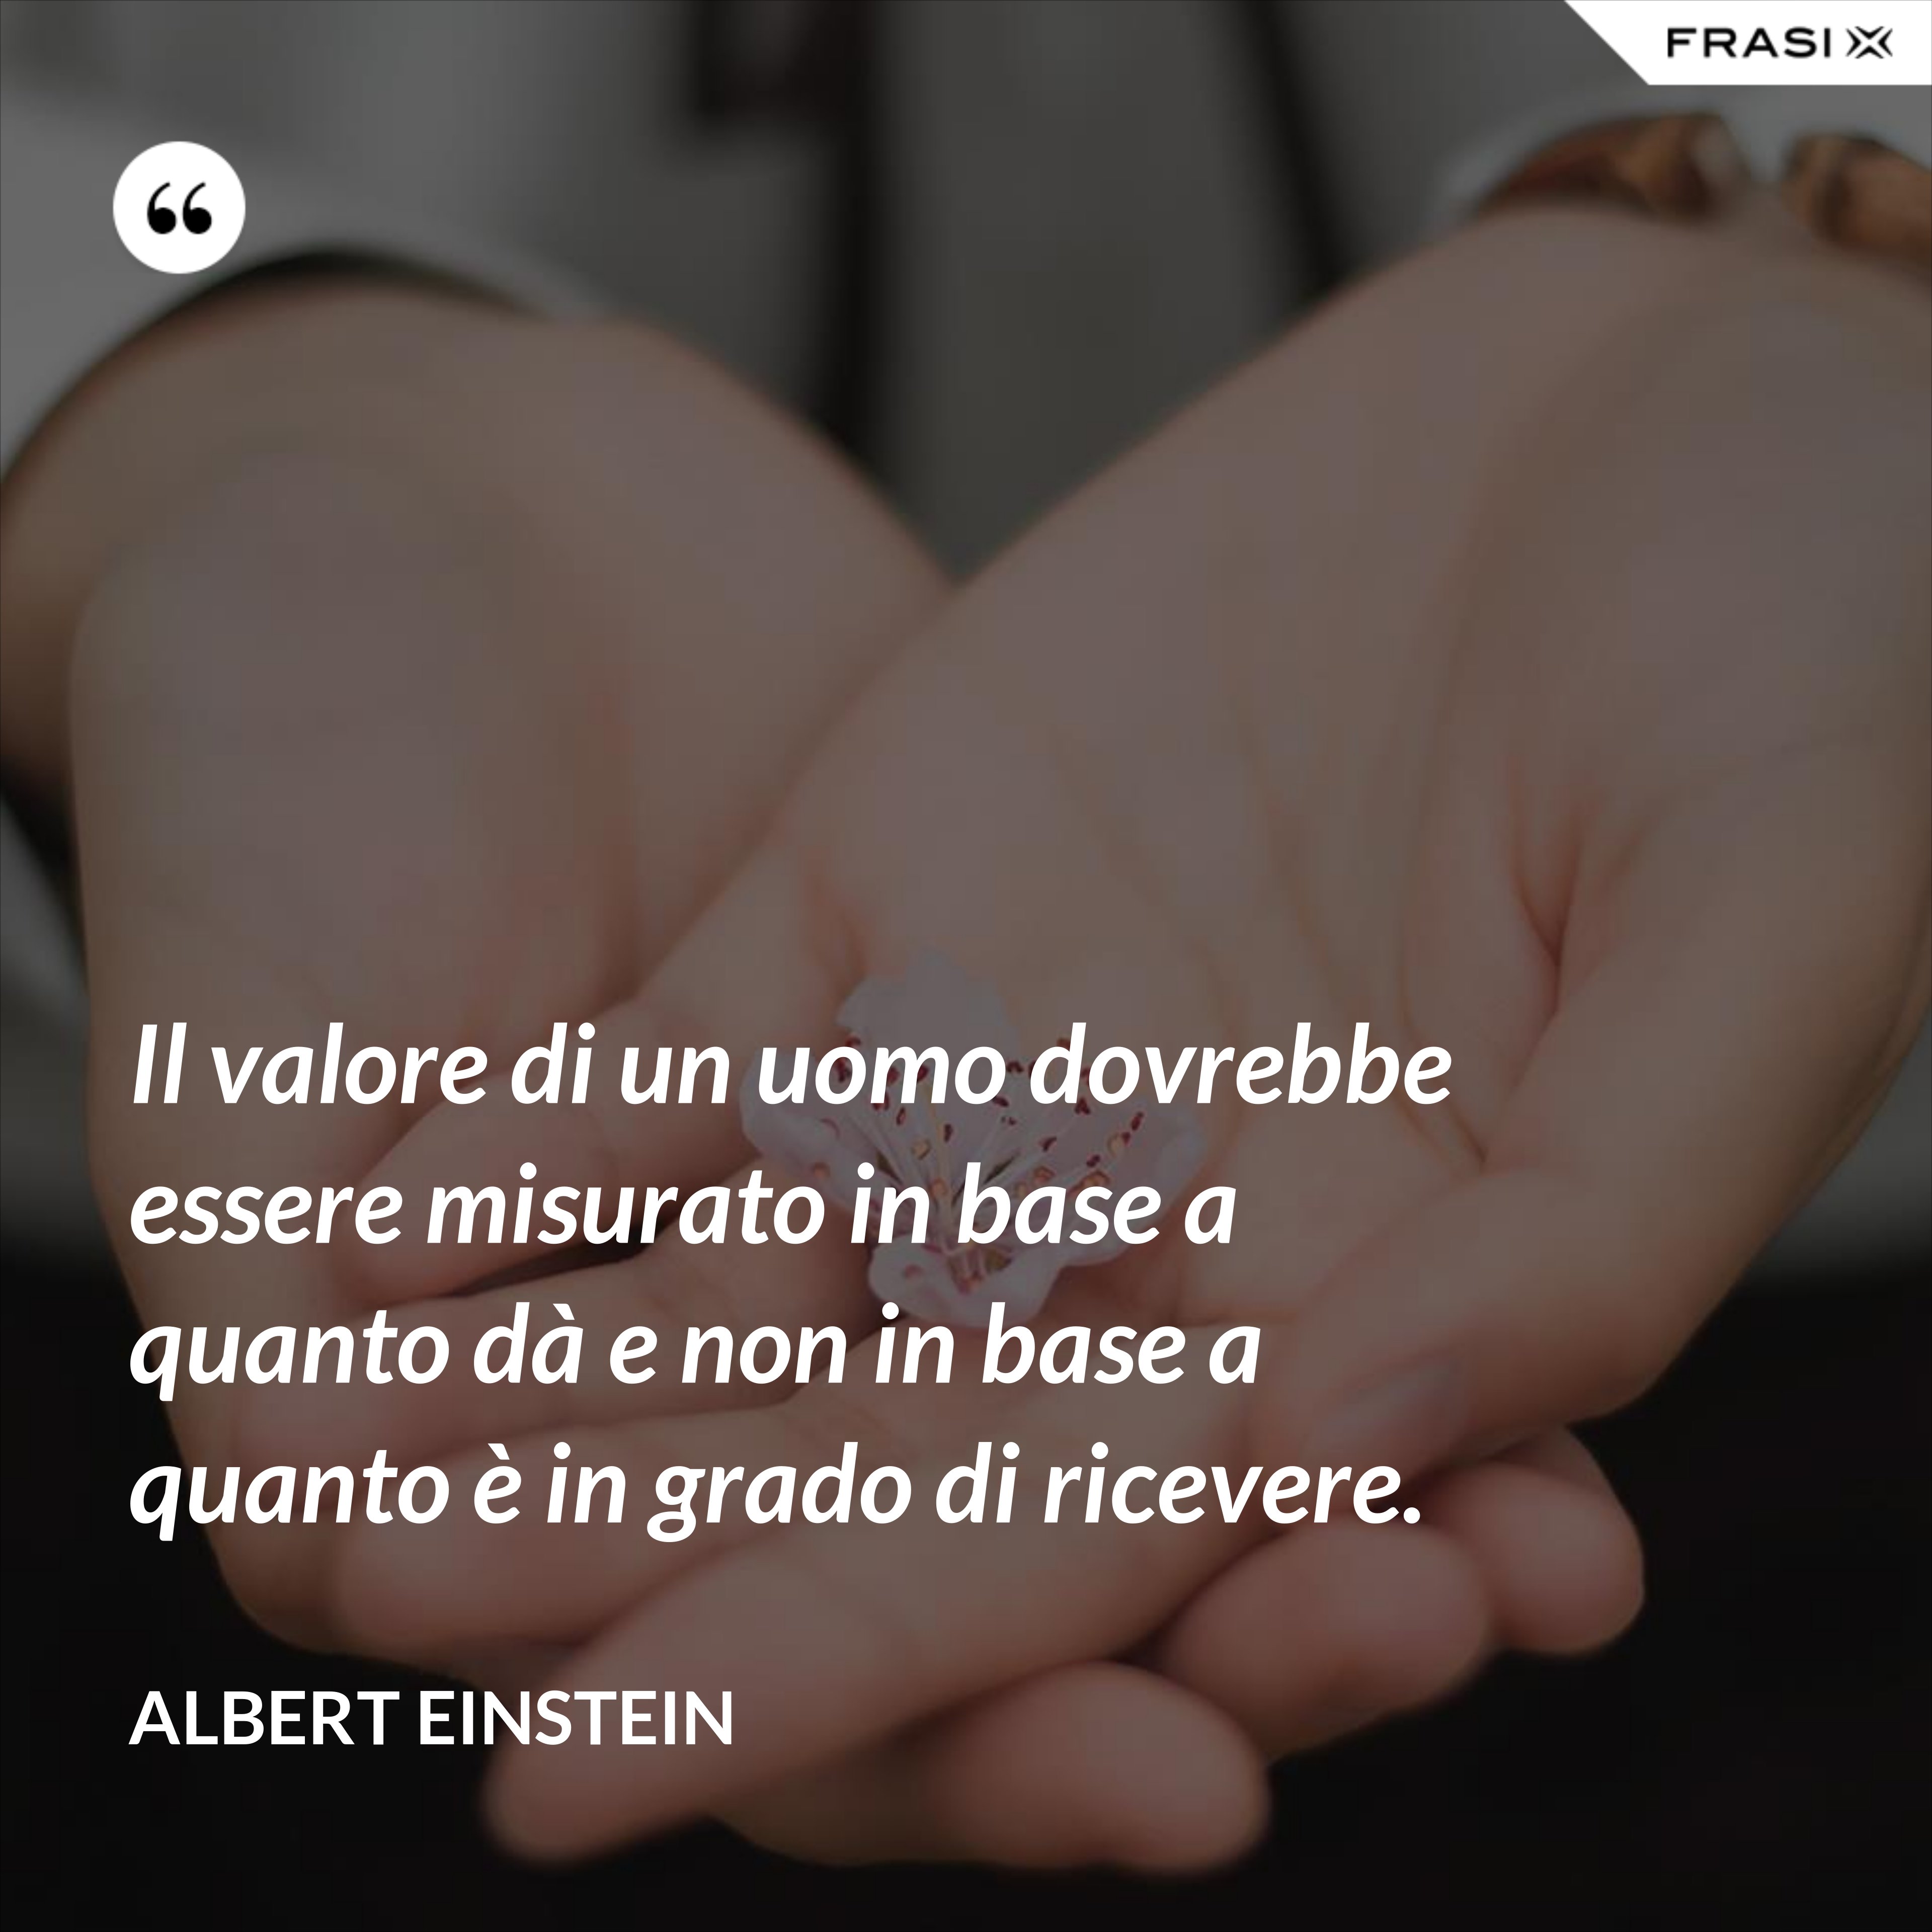 Il valore di un uomo dovrebbe essere misurato in base a quanto dà e non in base a quanto è in grado di ricevere. - Albert Einstein